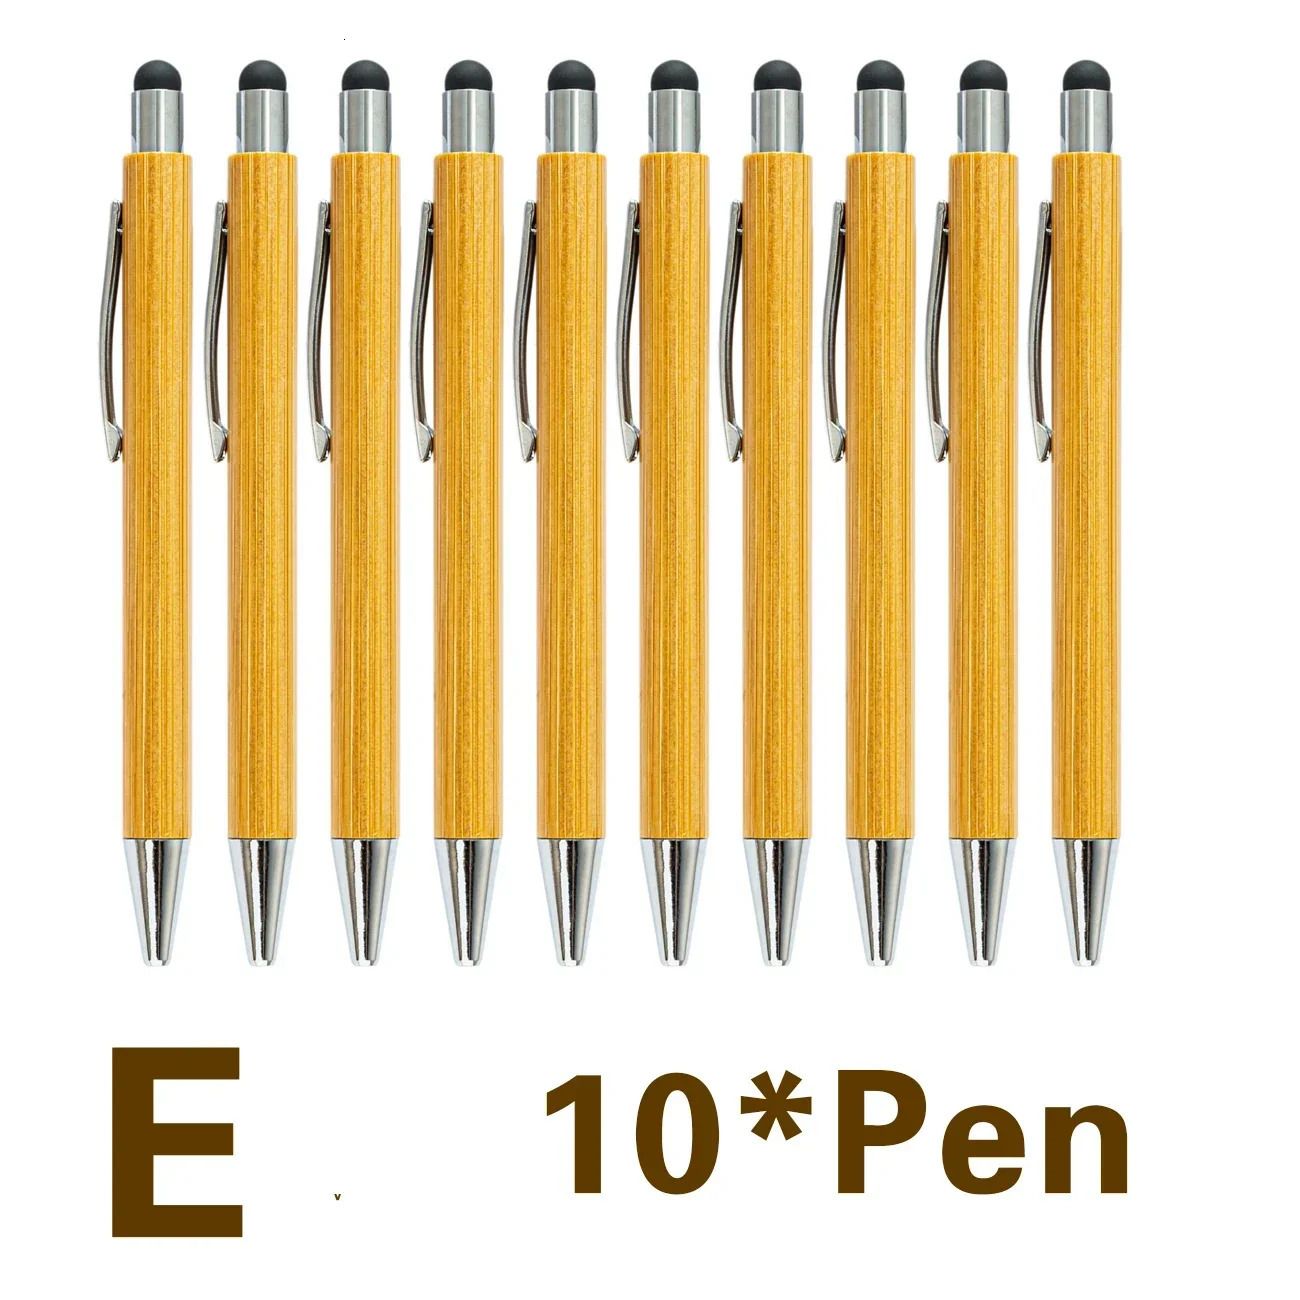 e - 10 penne